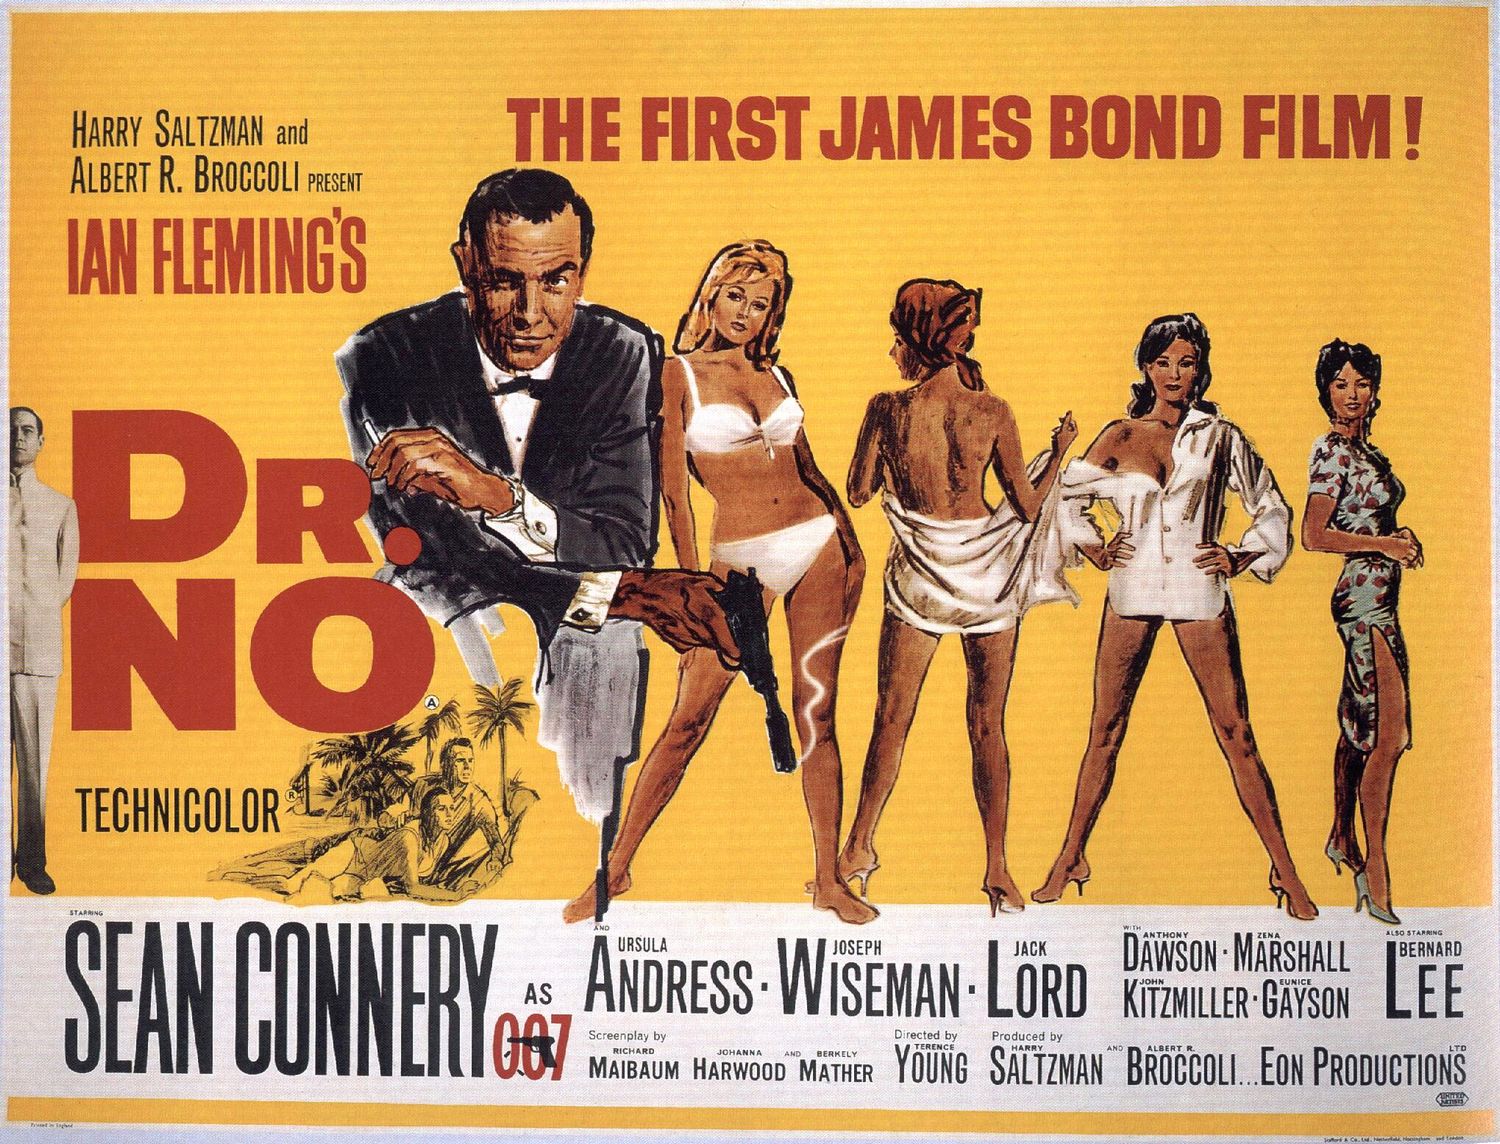 Il ne s'agit pas d'une des affiches vintage de films d'horreur dont nous avons parlé, mais de la première affiche du premier James Bond, qui est magnifique.  